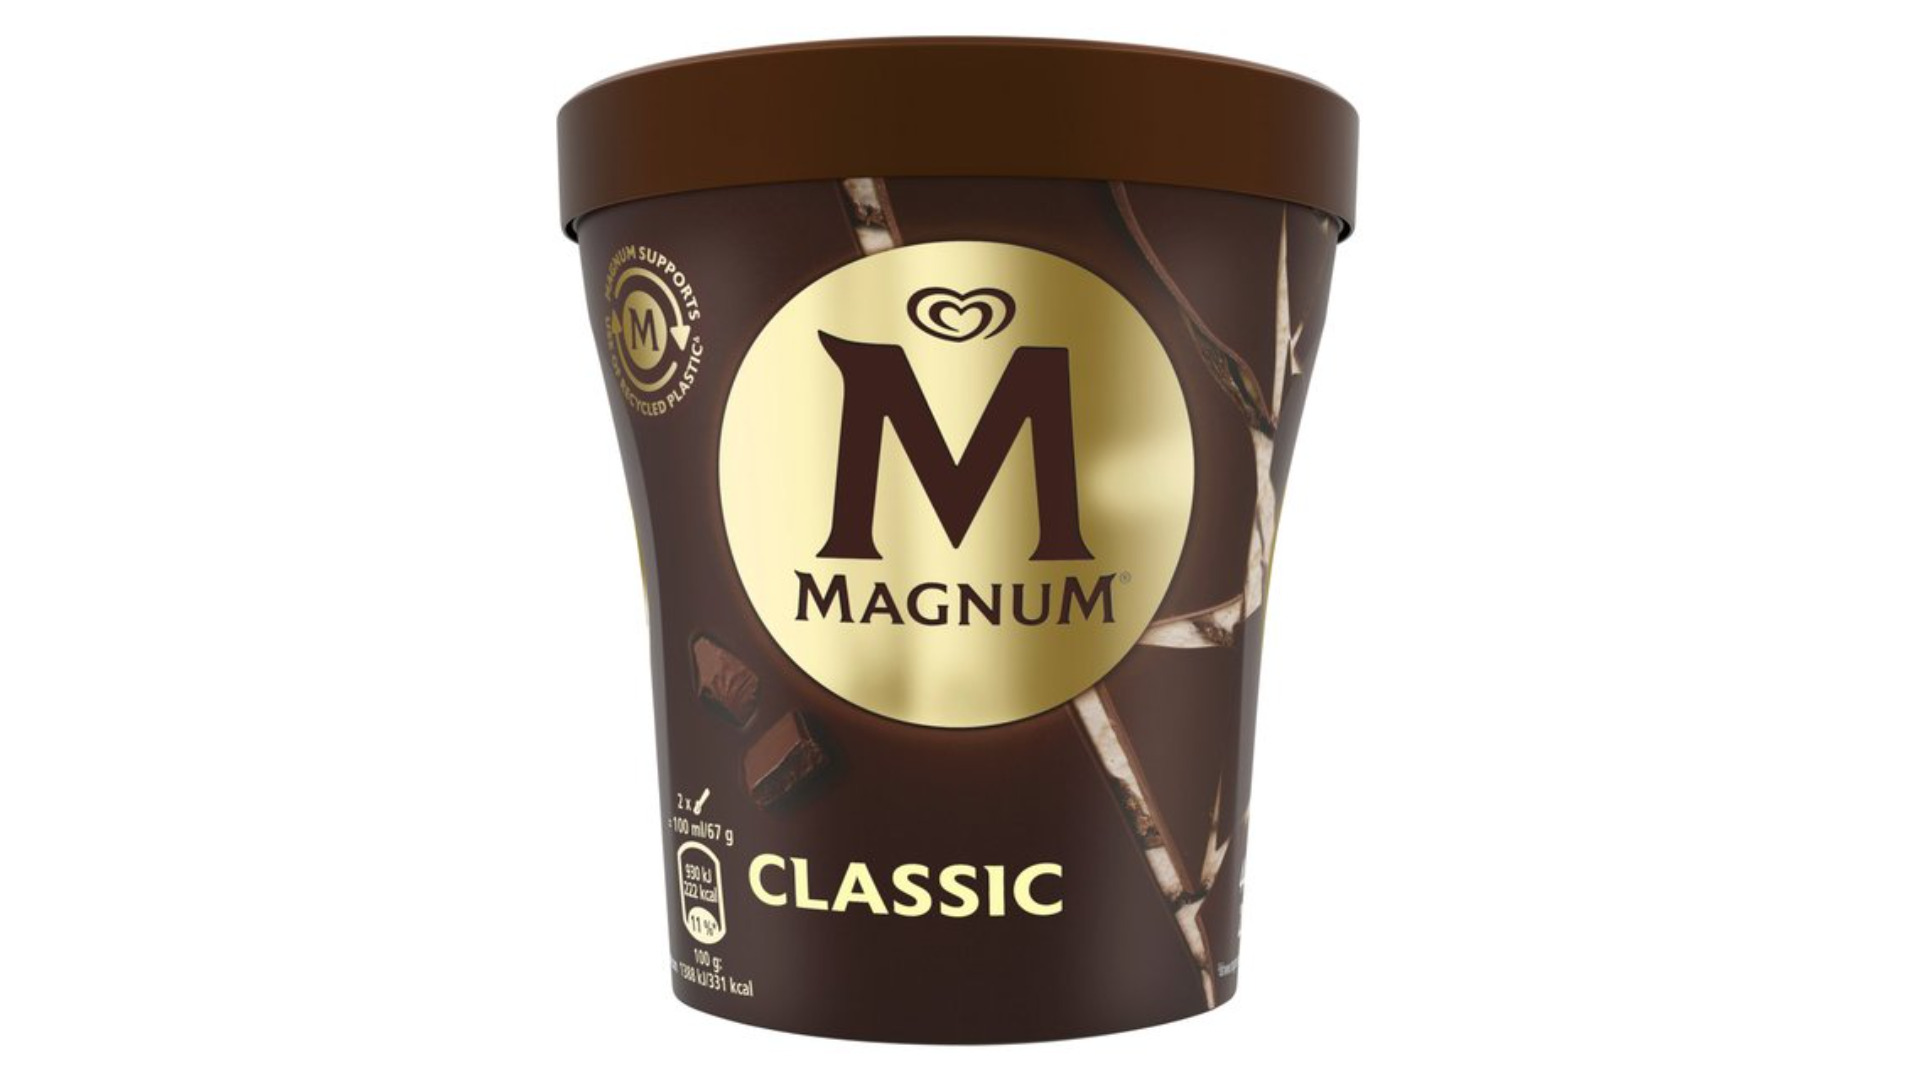 Magnum Tub Classic - Milkshake Collection in Cranbrook IG1